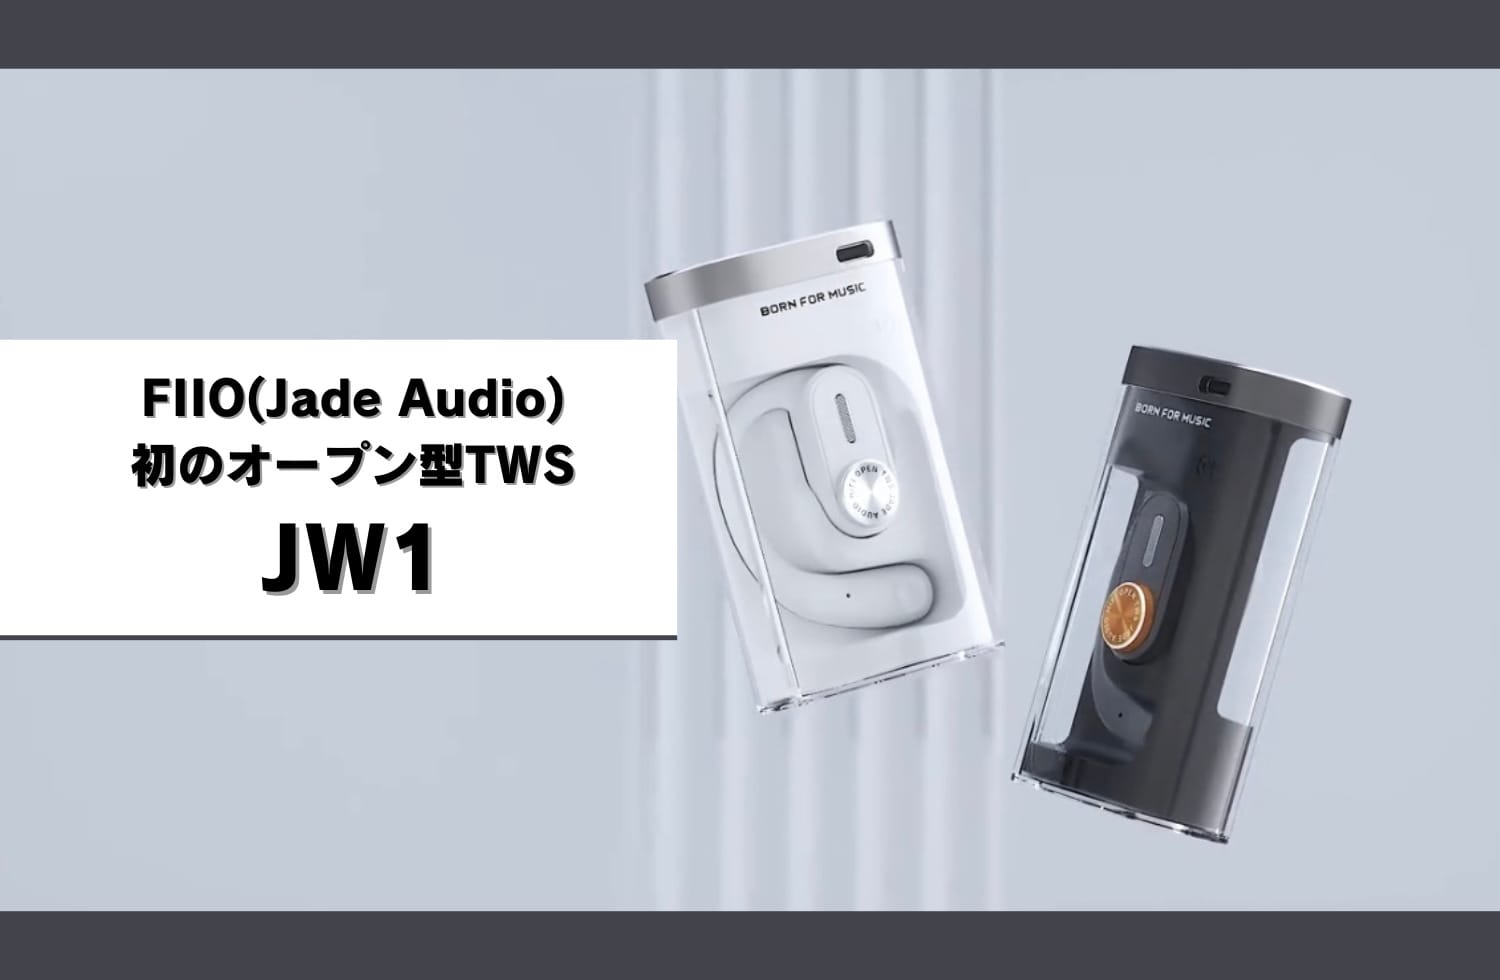 Fiio（jade Audio）初 オープン型tws Jw1